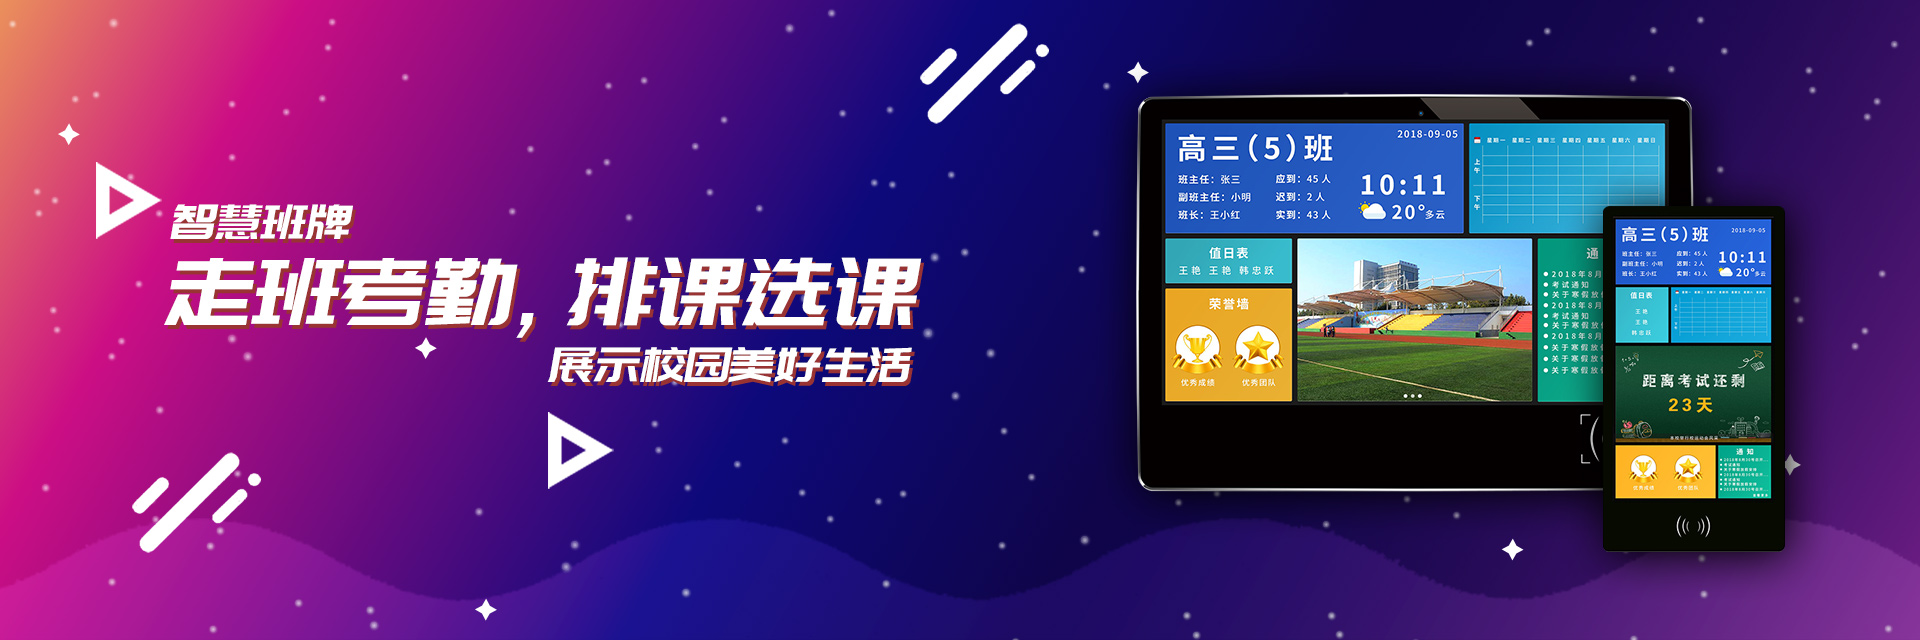 关于当前产品49c彩票网app下载·(中国)官方网站的成功案例等相关图片